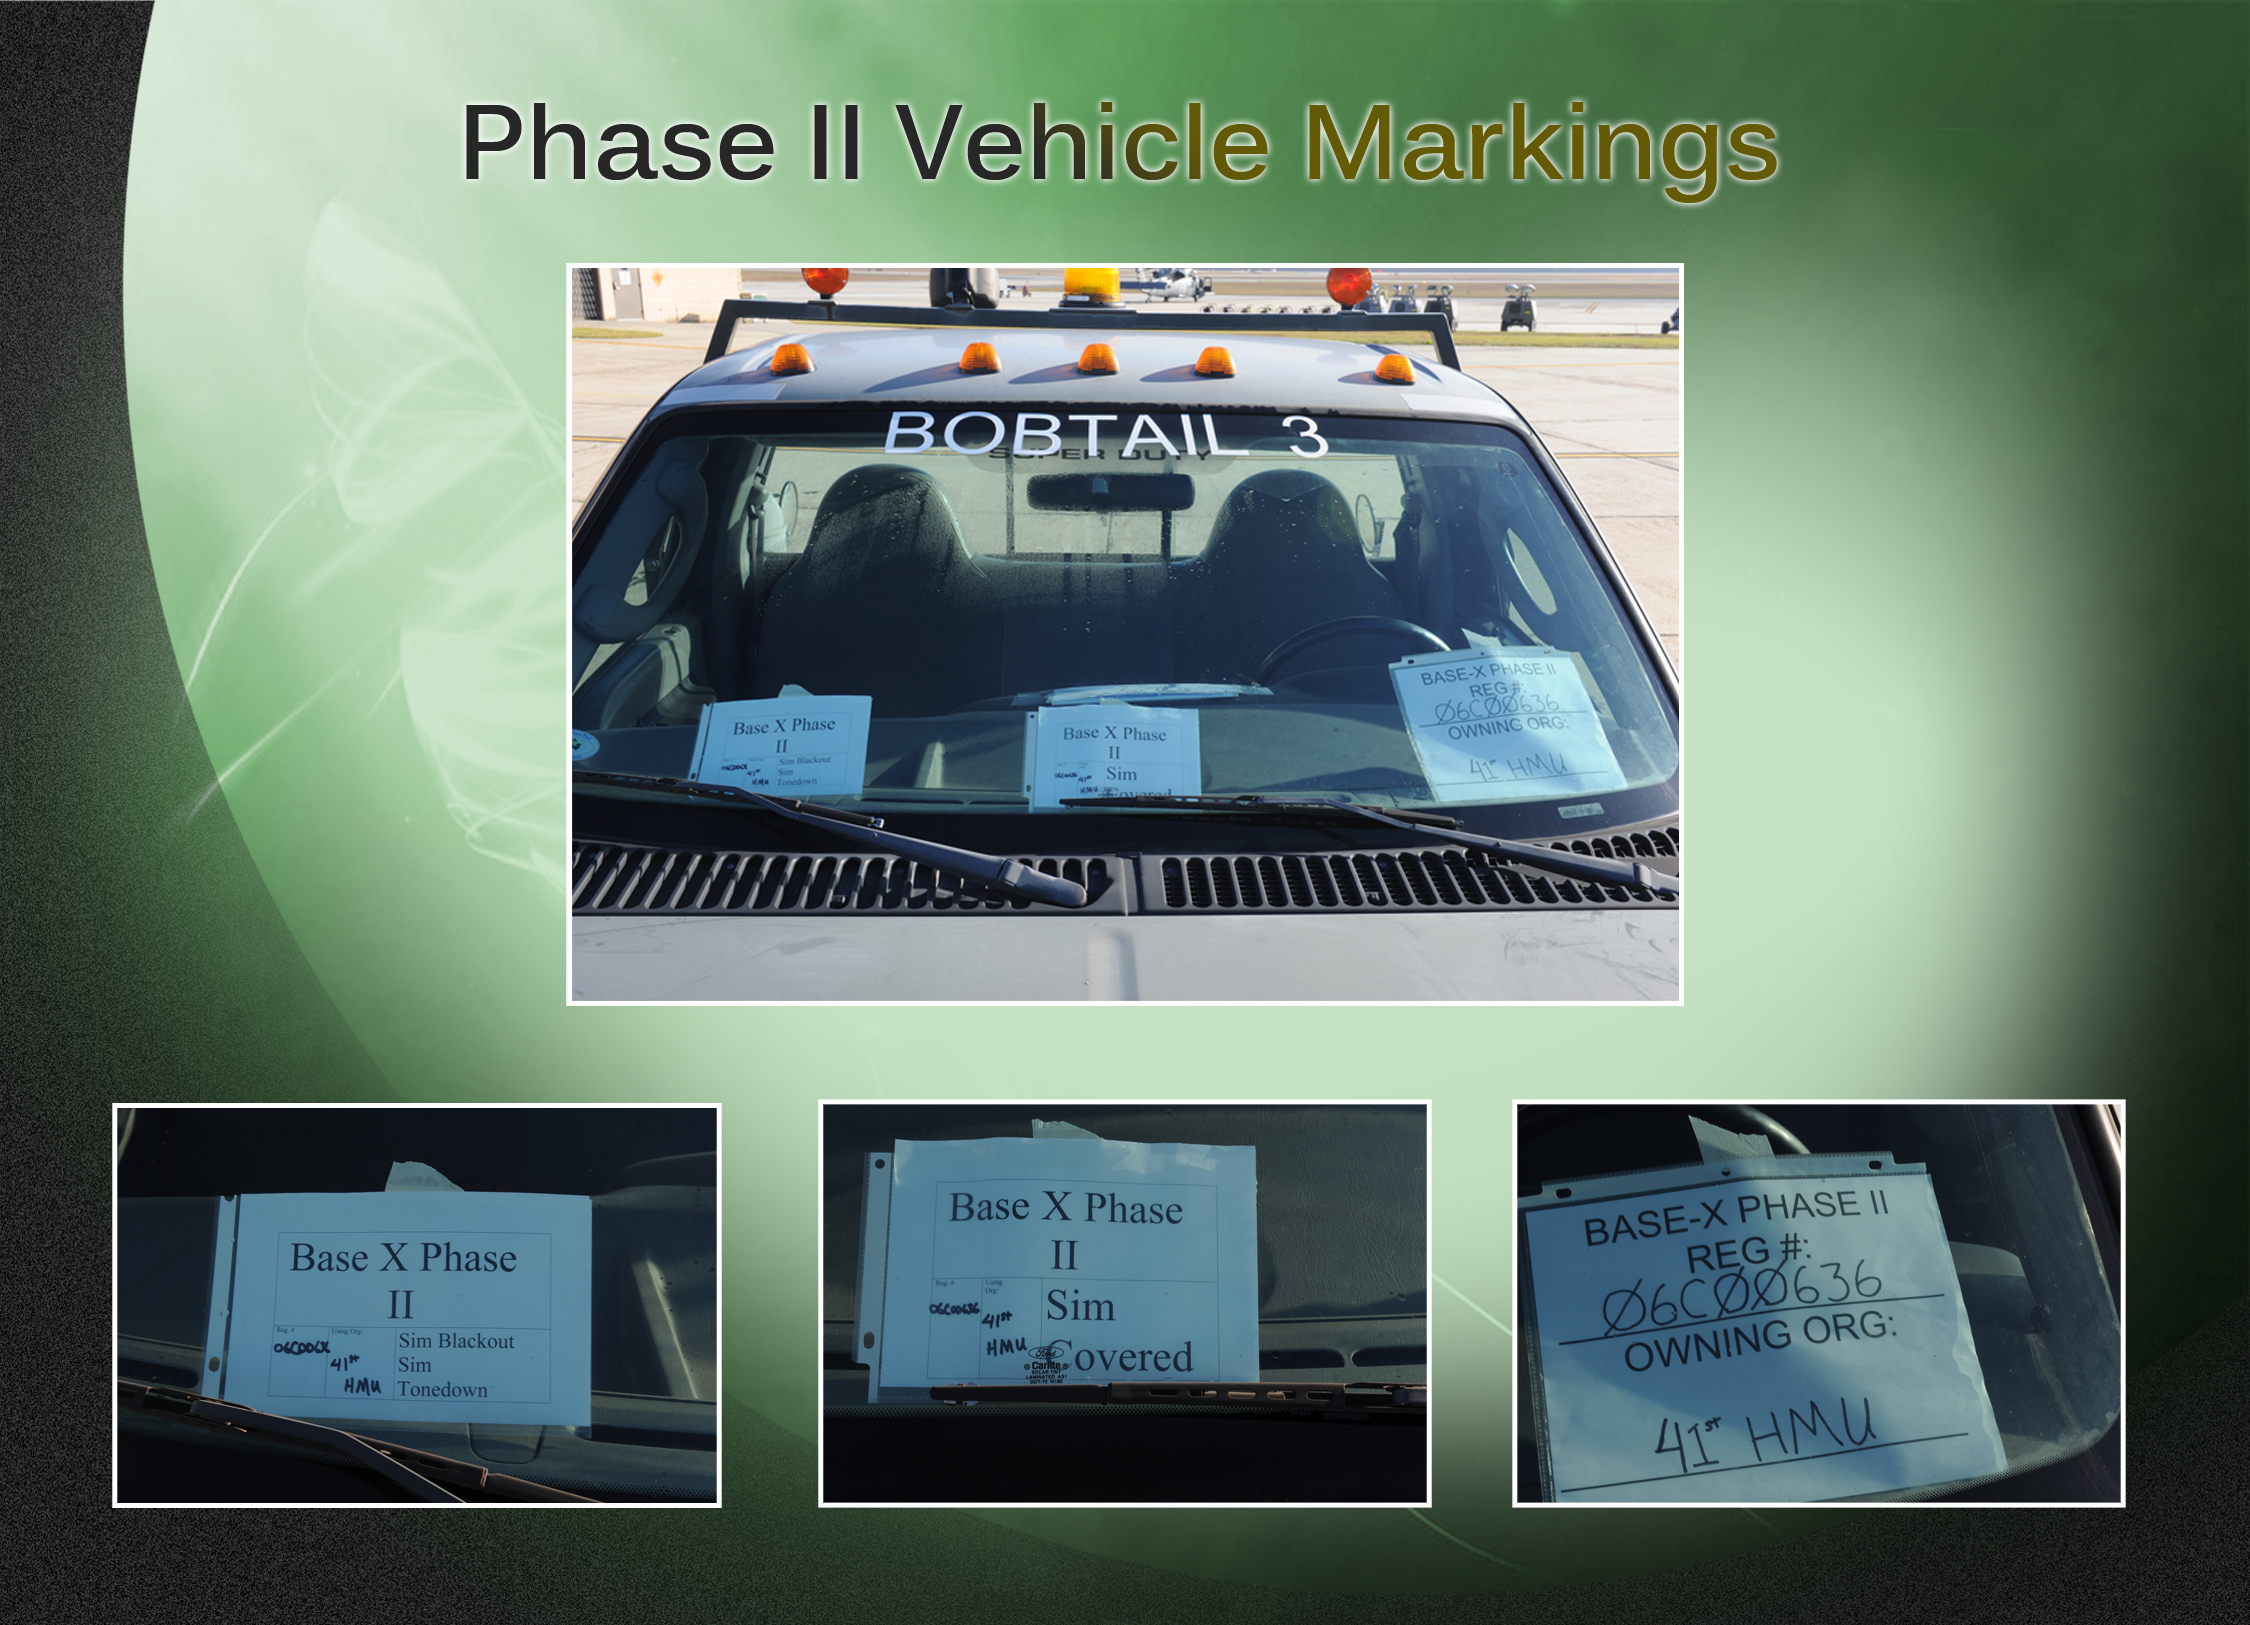 Phase II Vehicle Markings